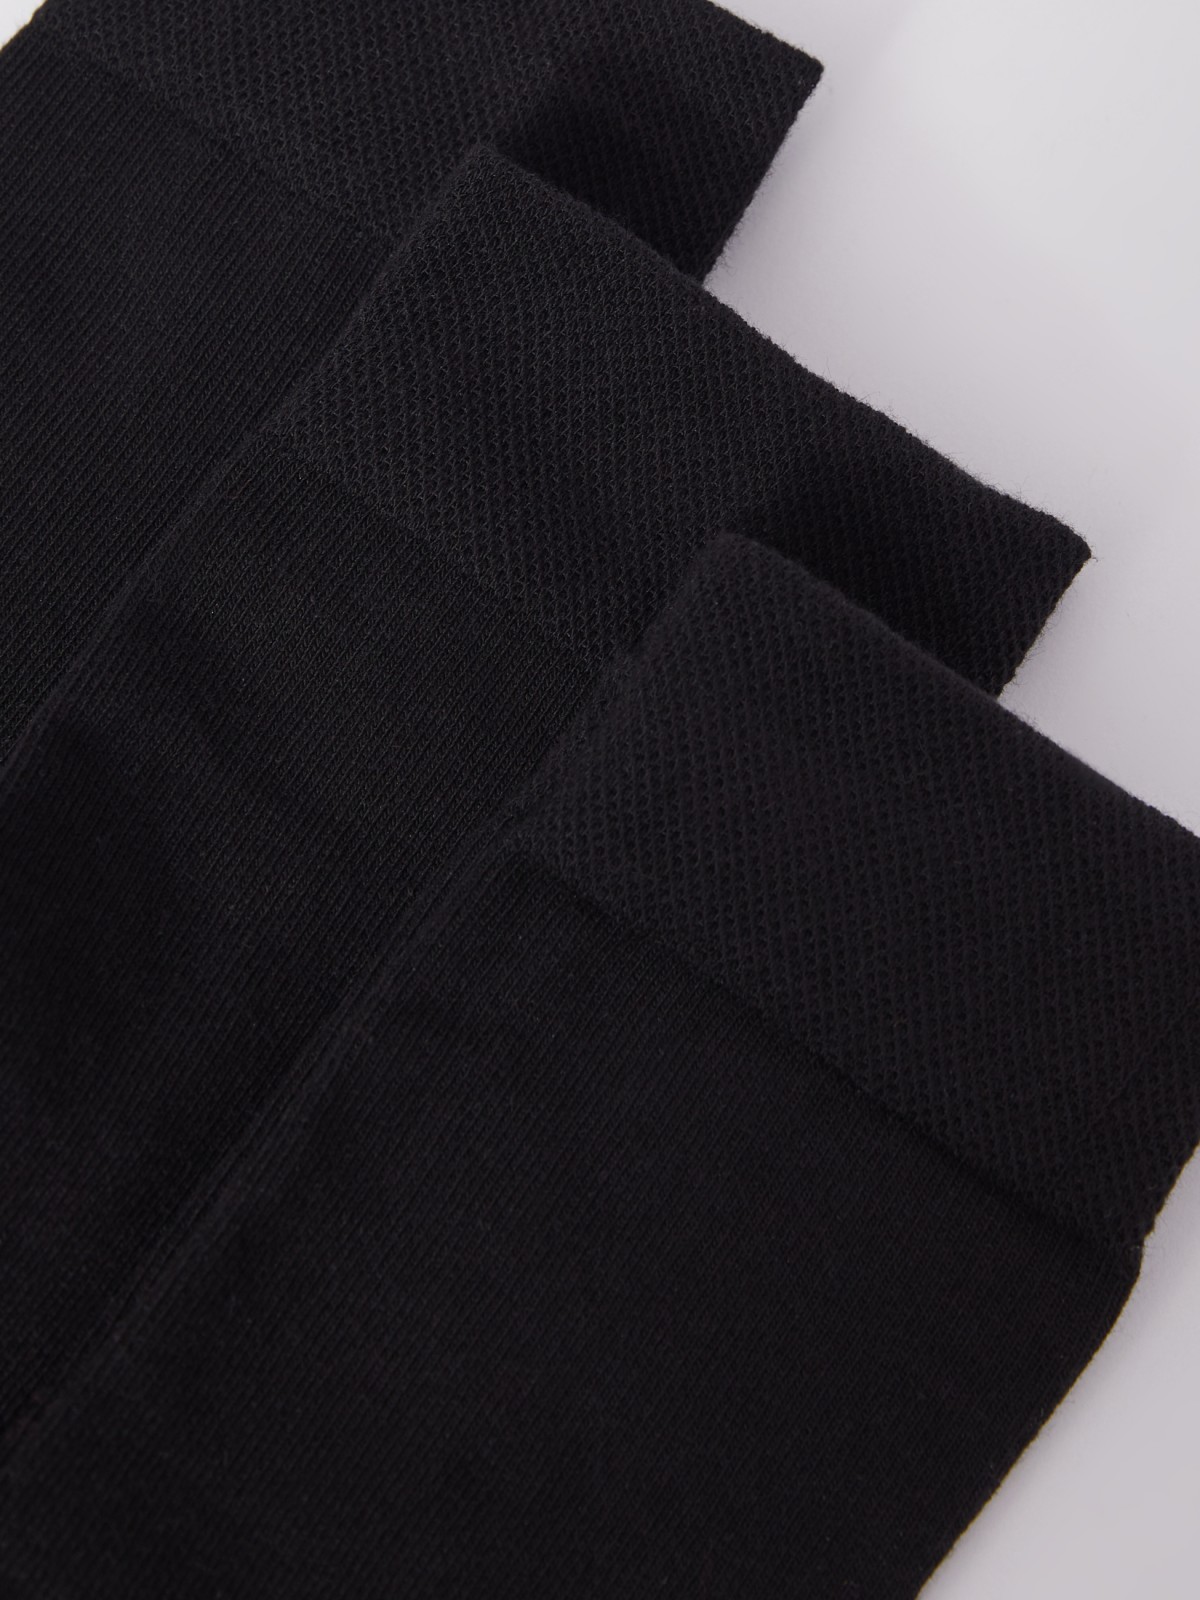 Набор носков (3 пары в комплекте) zolla 01331996G015, цвет черный, размер 25-27 - фото 3